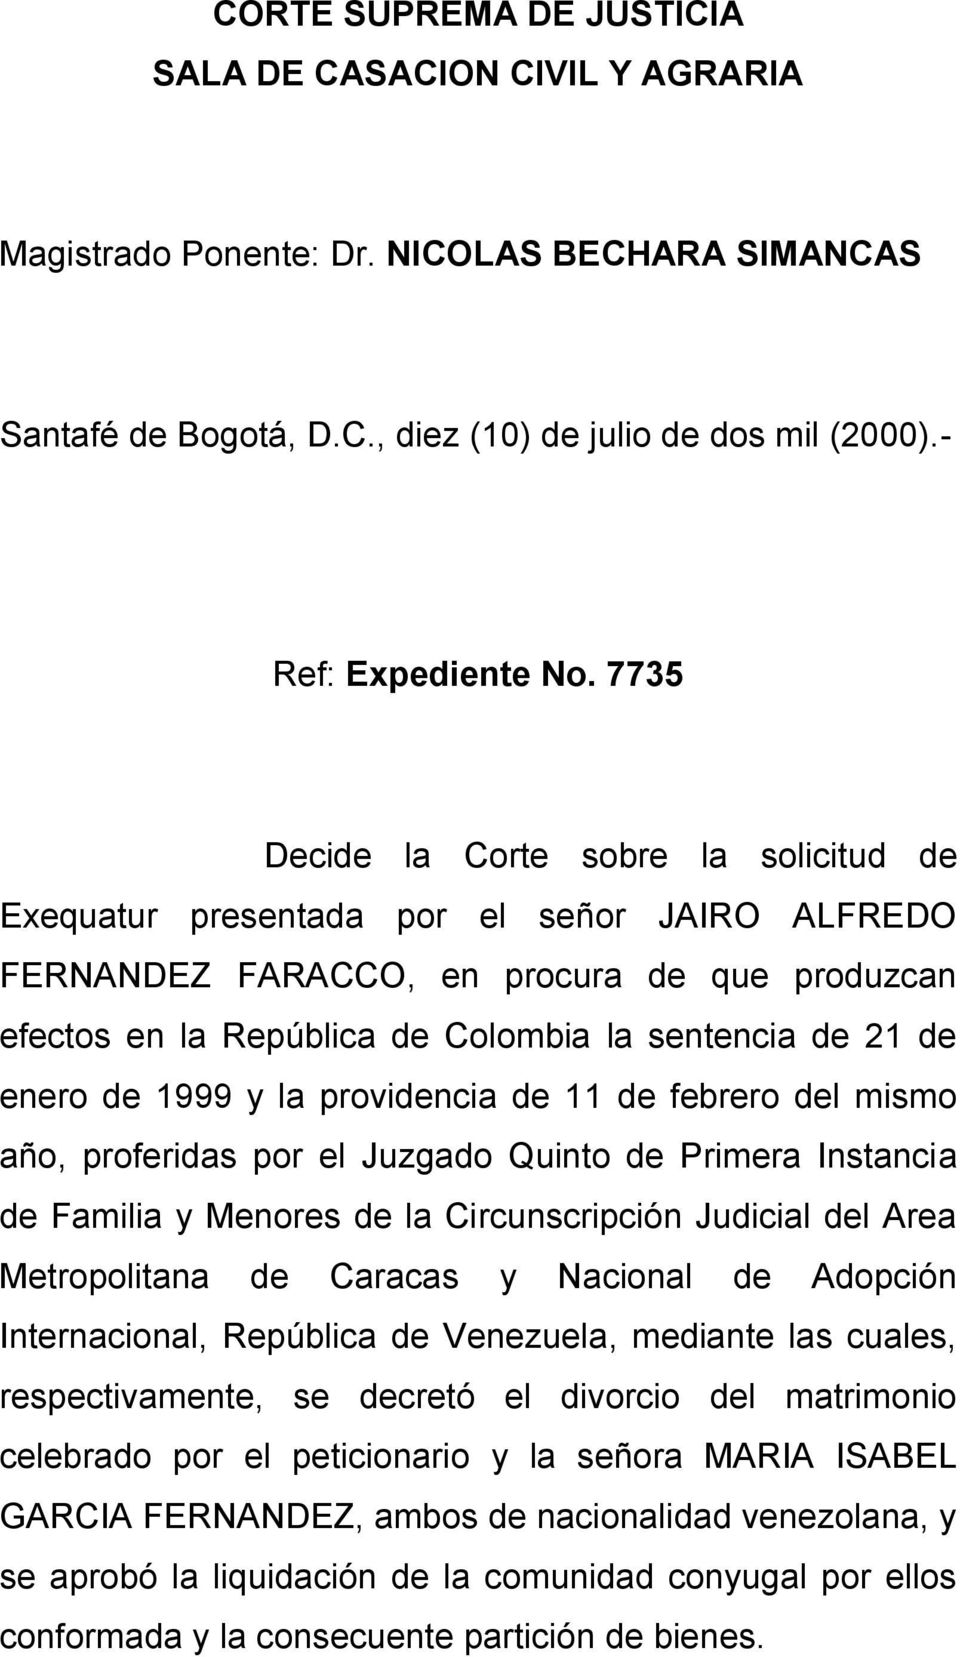 enero de 1999 y la providencia de 11 de febrero del mismo año, proferidas por el Juzgado Quinto de Primera Instancia de Familia y Menores de la Circunscripción Judicial del Area Metropolitana de